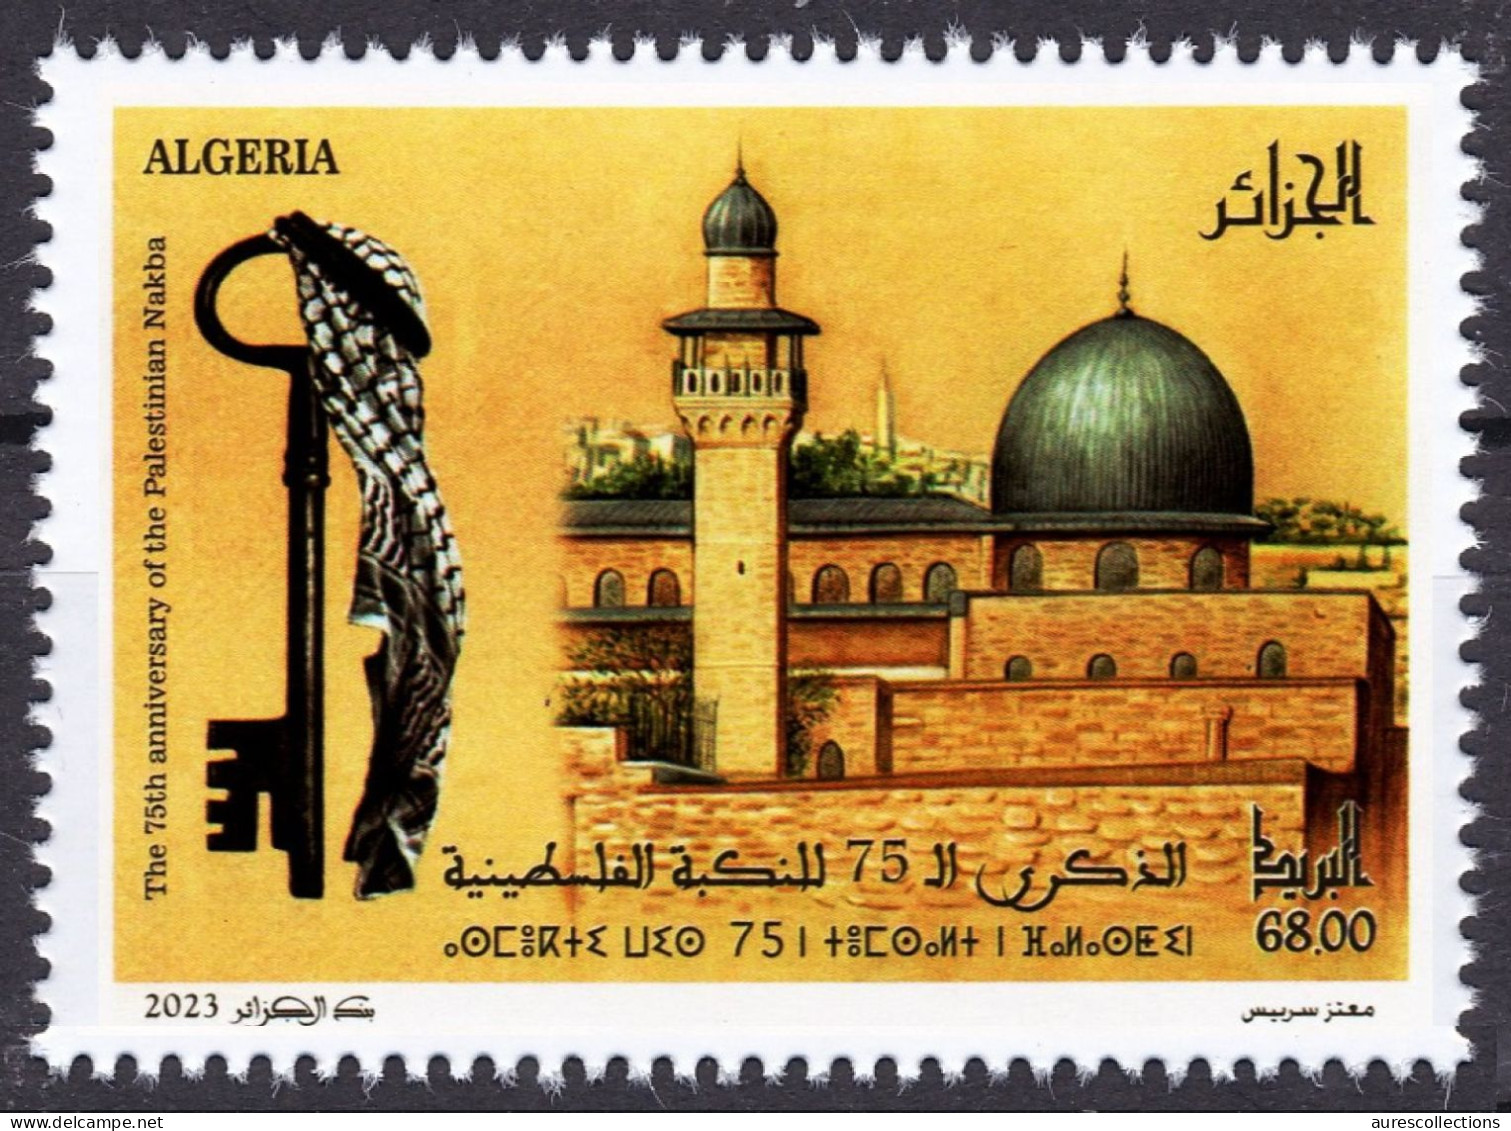 ALGERIE ALGERIA 2023 - JERUSALEM PALESTINE QUDS ALQUDS 75TH ANNIVERSARY OF THE PALESTINIAN NAKBA MOSQUE KEFFIAH KEY MNH - Moscheen Und Synagogen